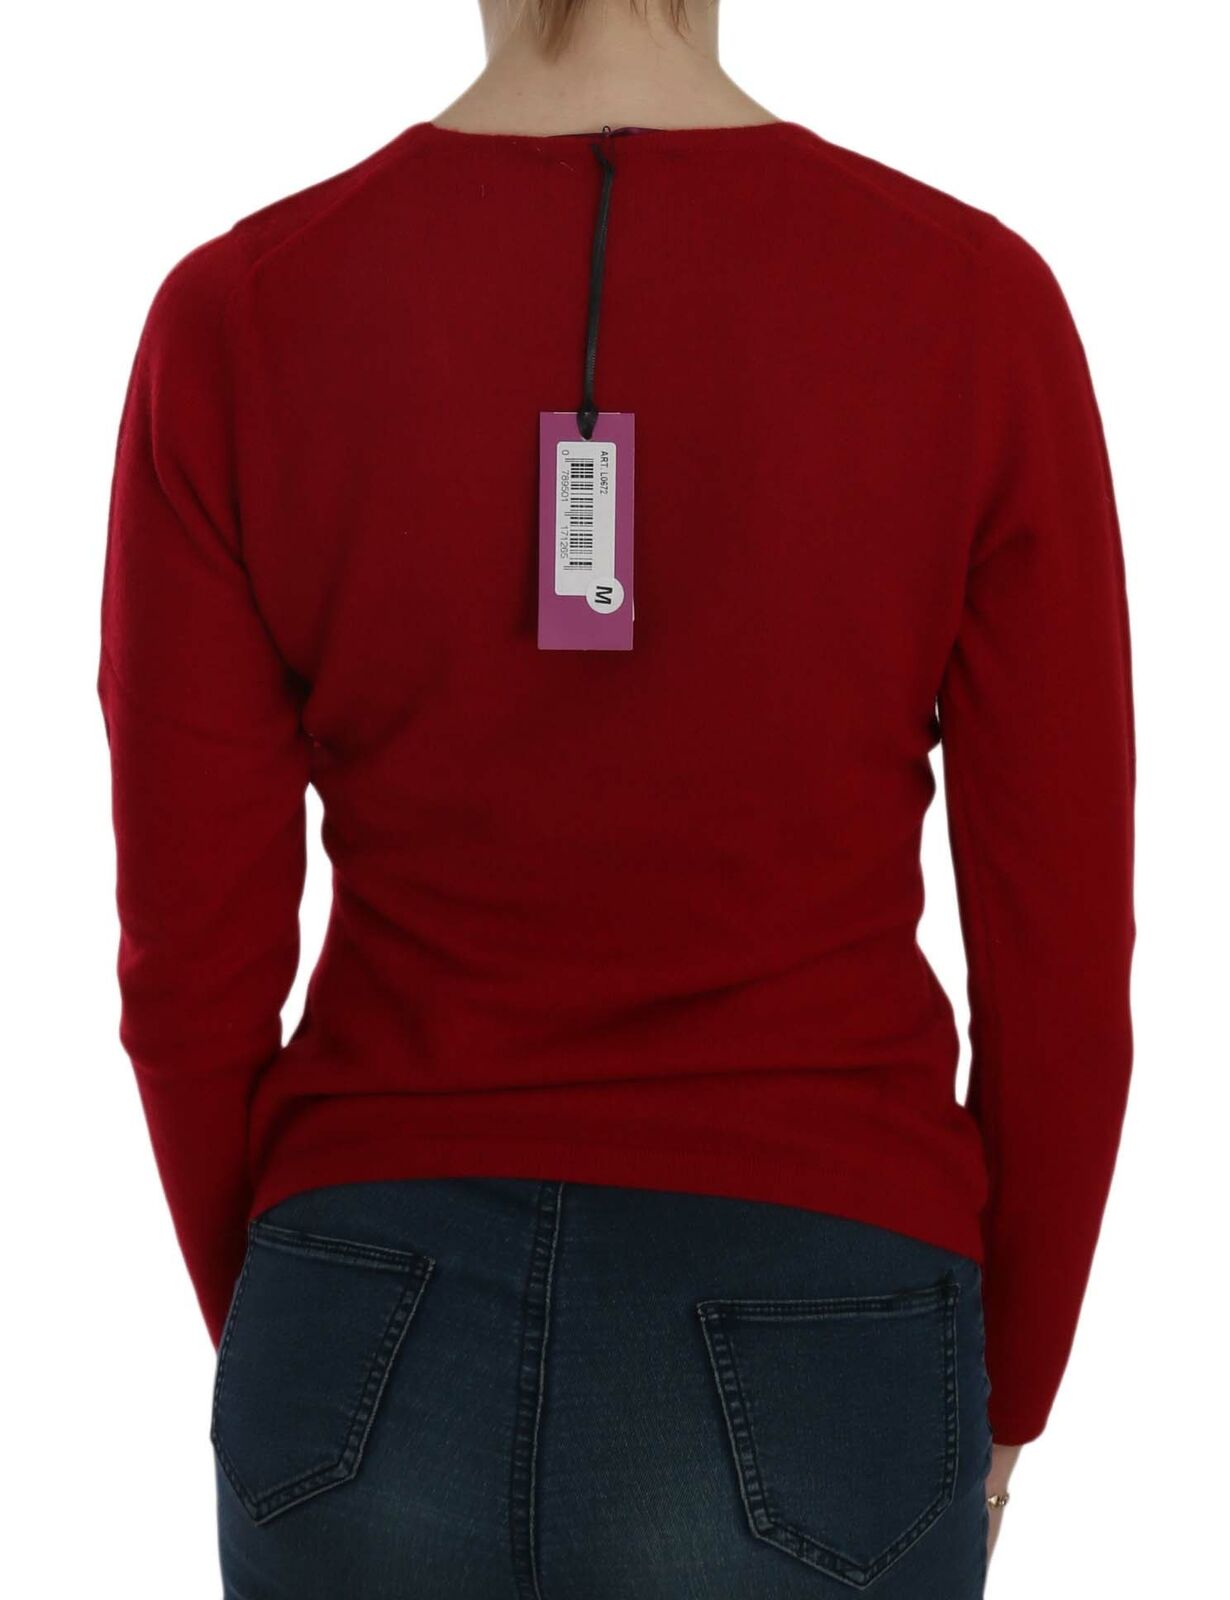 MILA SCHÖN Red Round Neck Pullover Cashmere Sweater - Fizigo